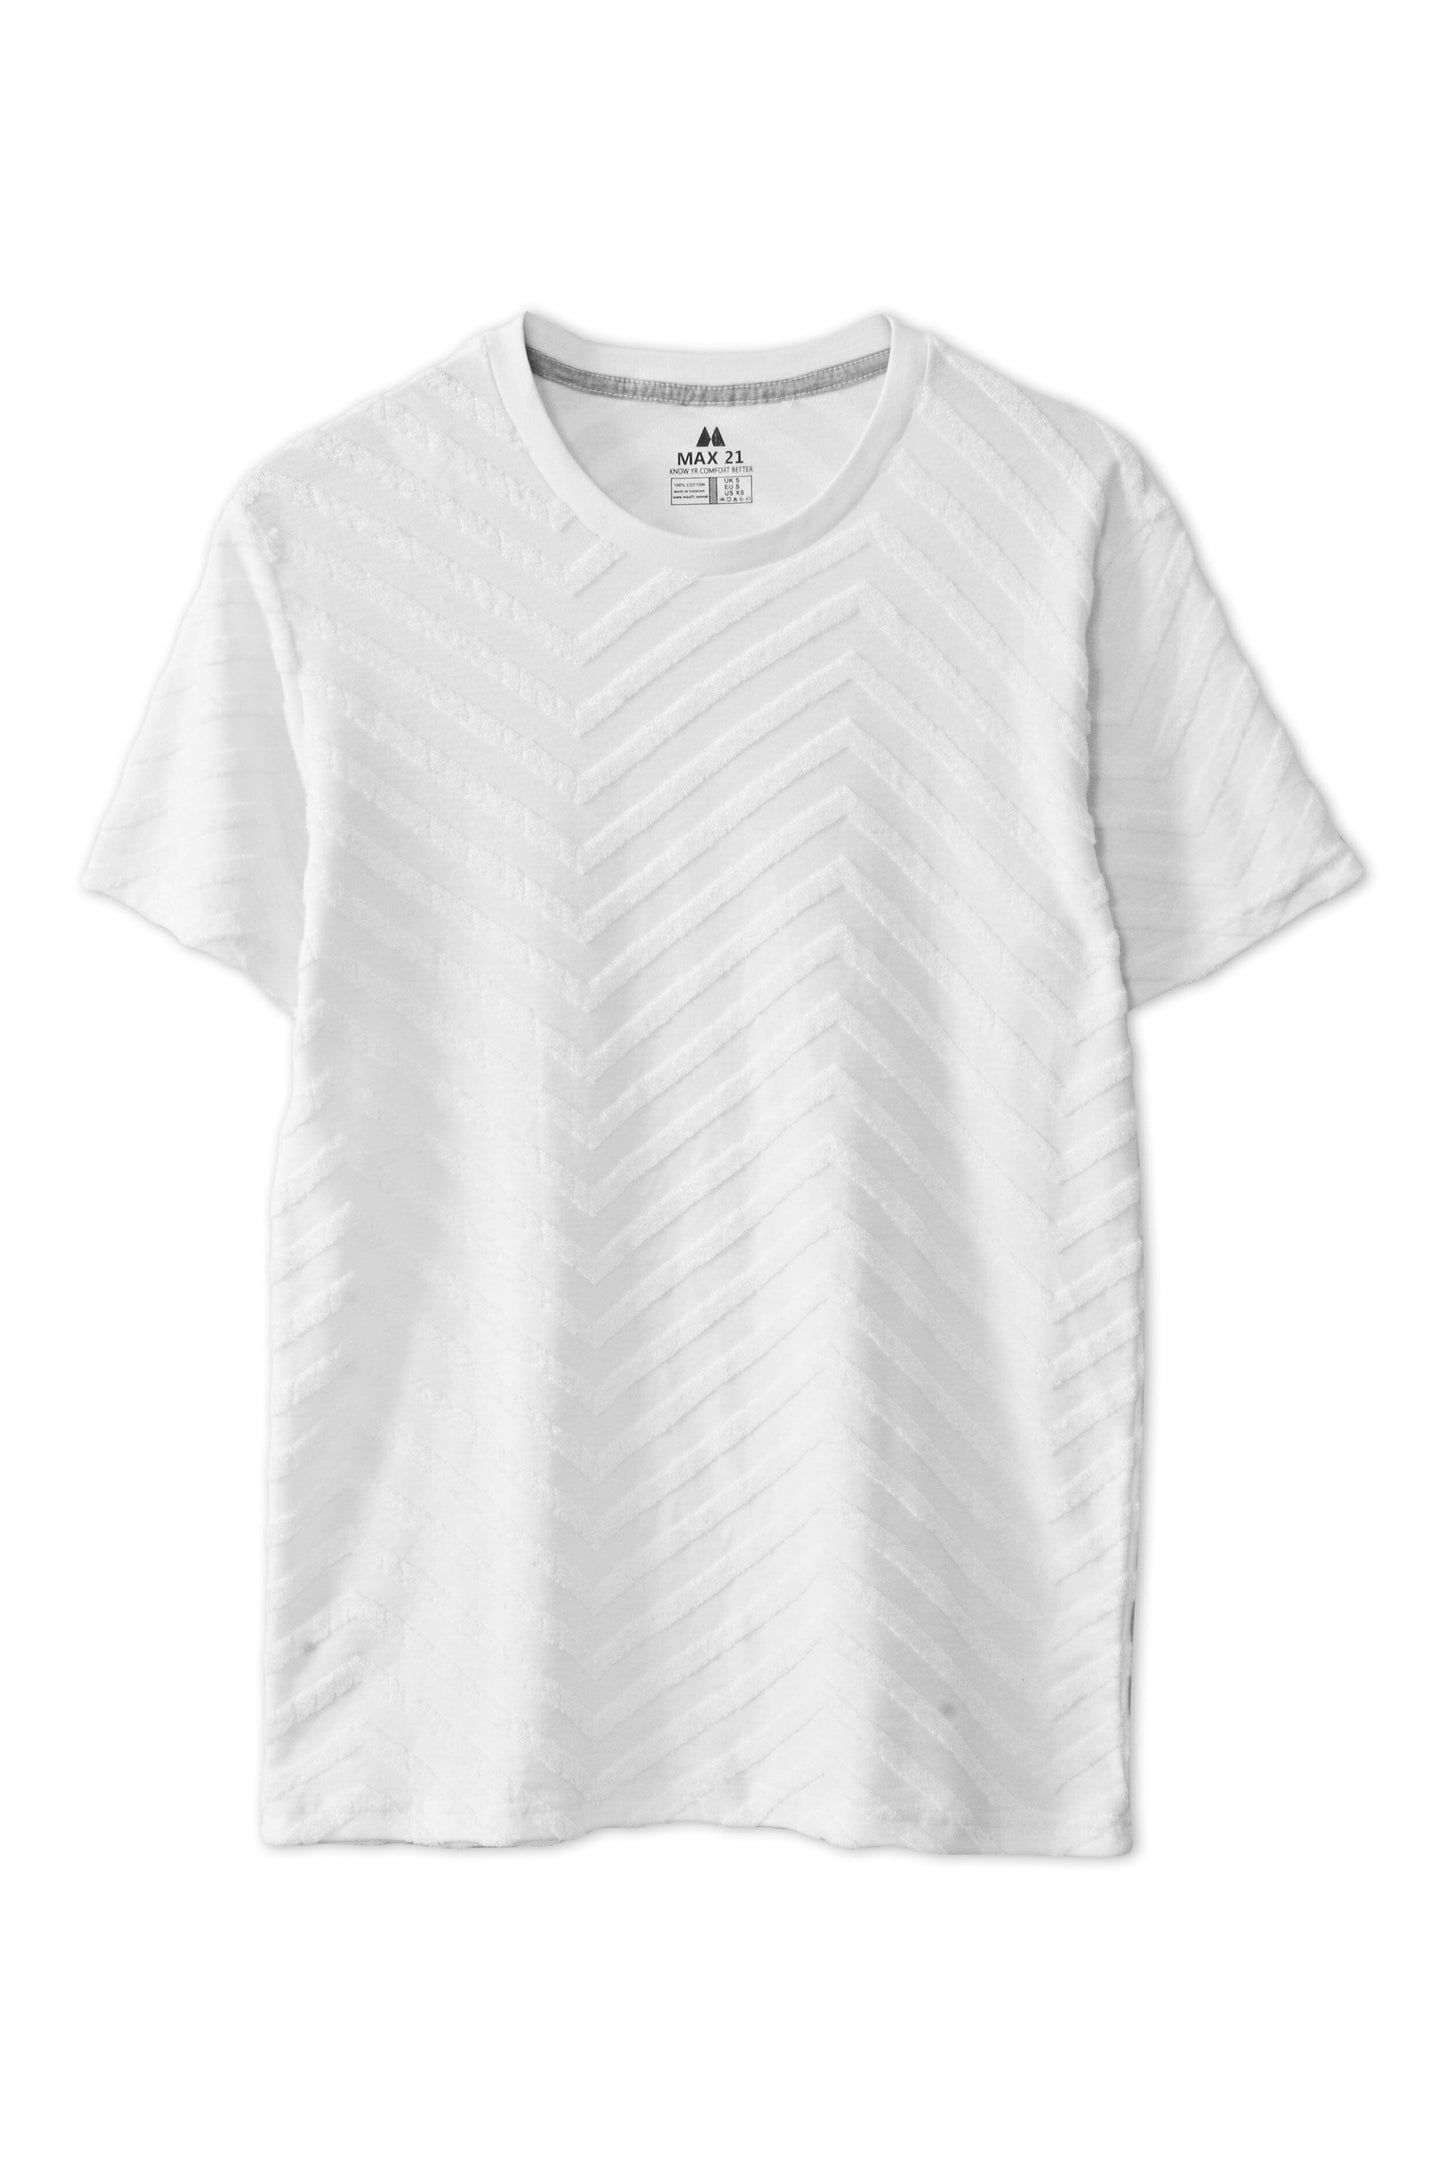 Max 21 Women's Wels Design Short Sleeve Tee Shirt Women's Tee Shirt SZK 